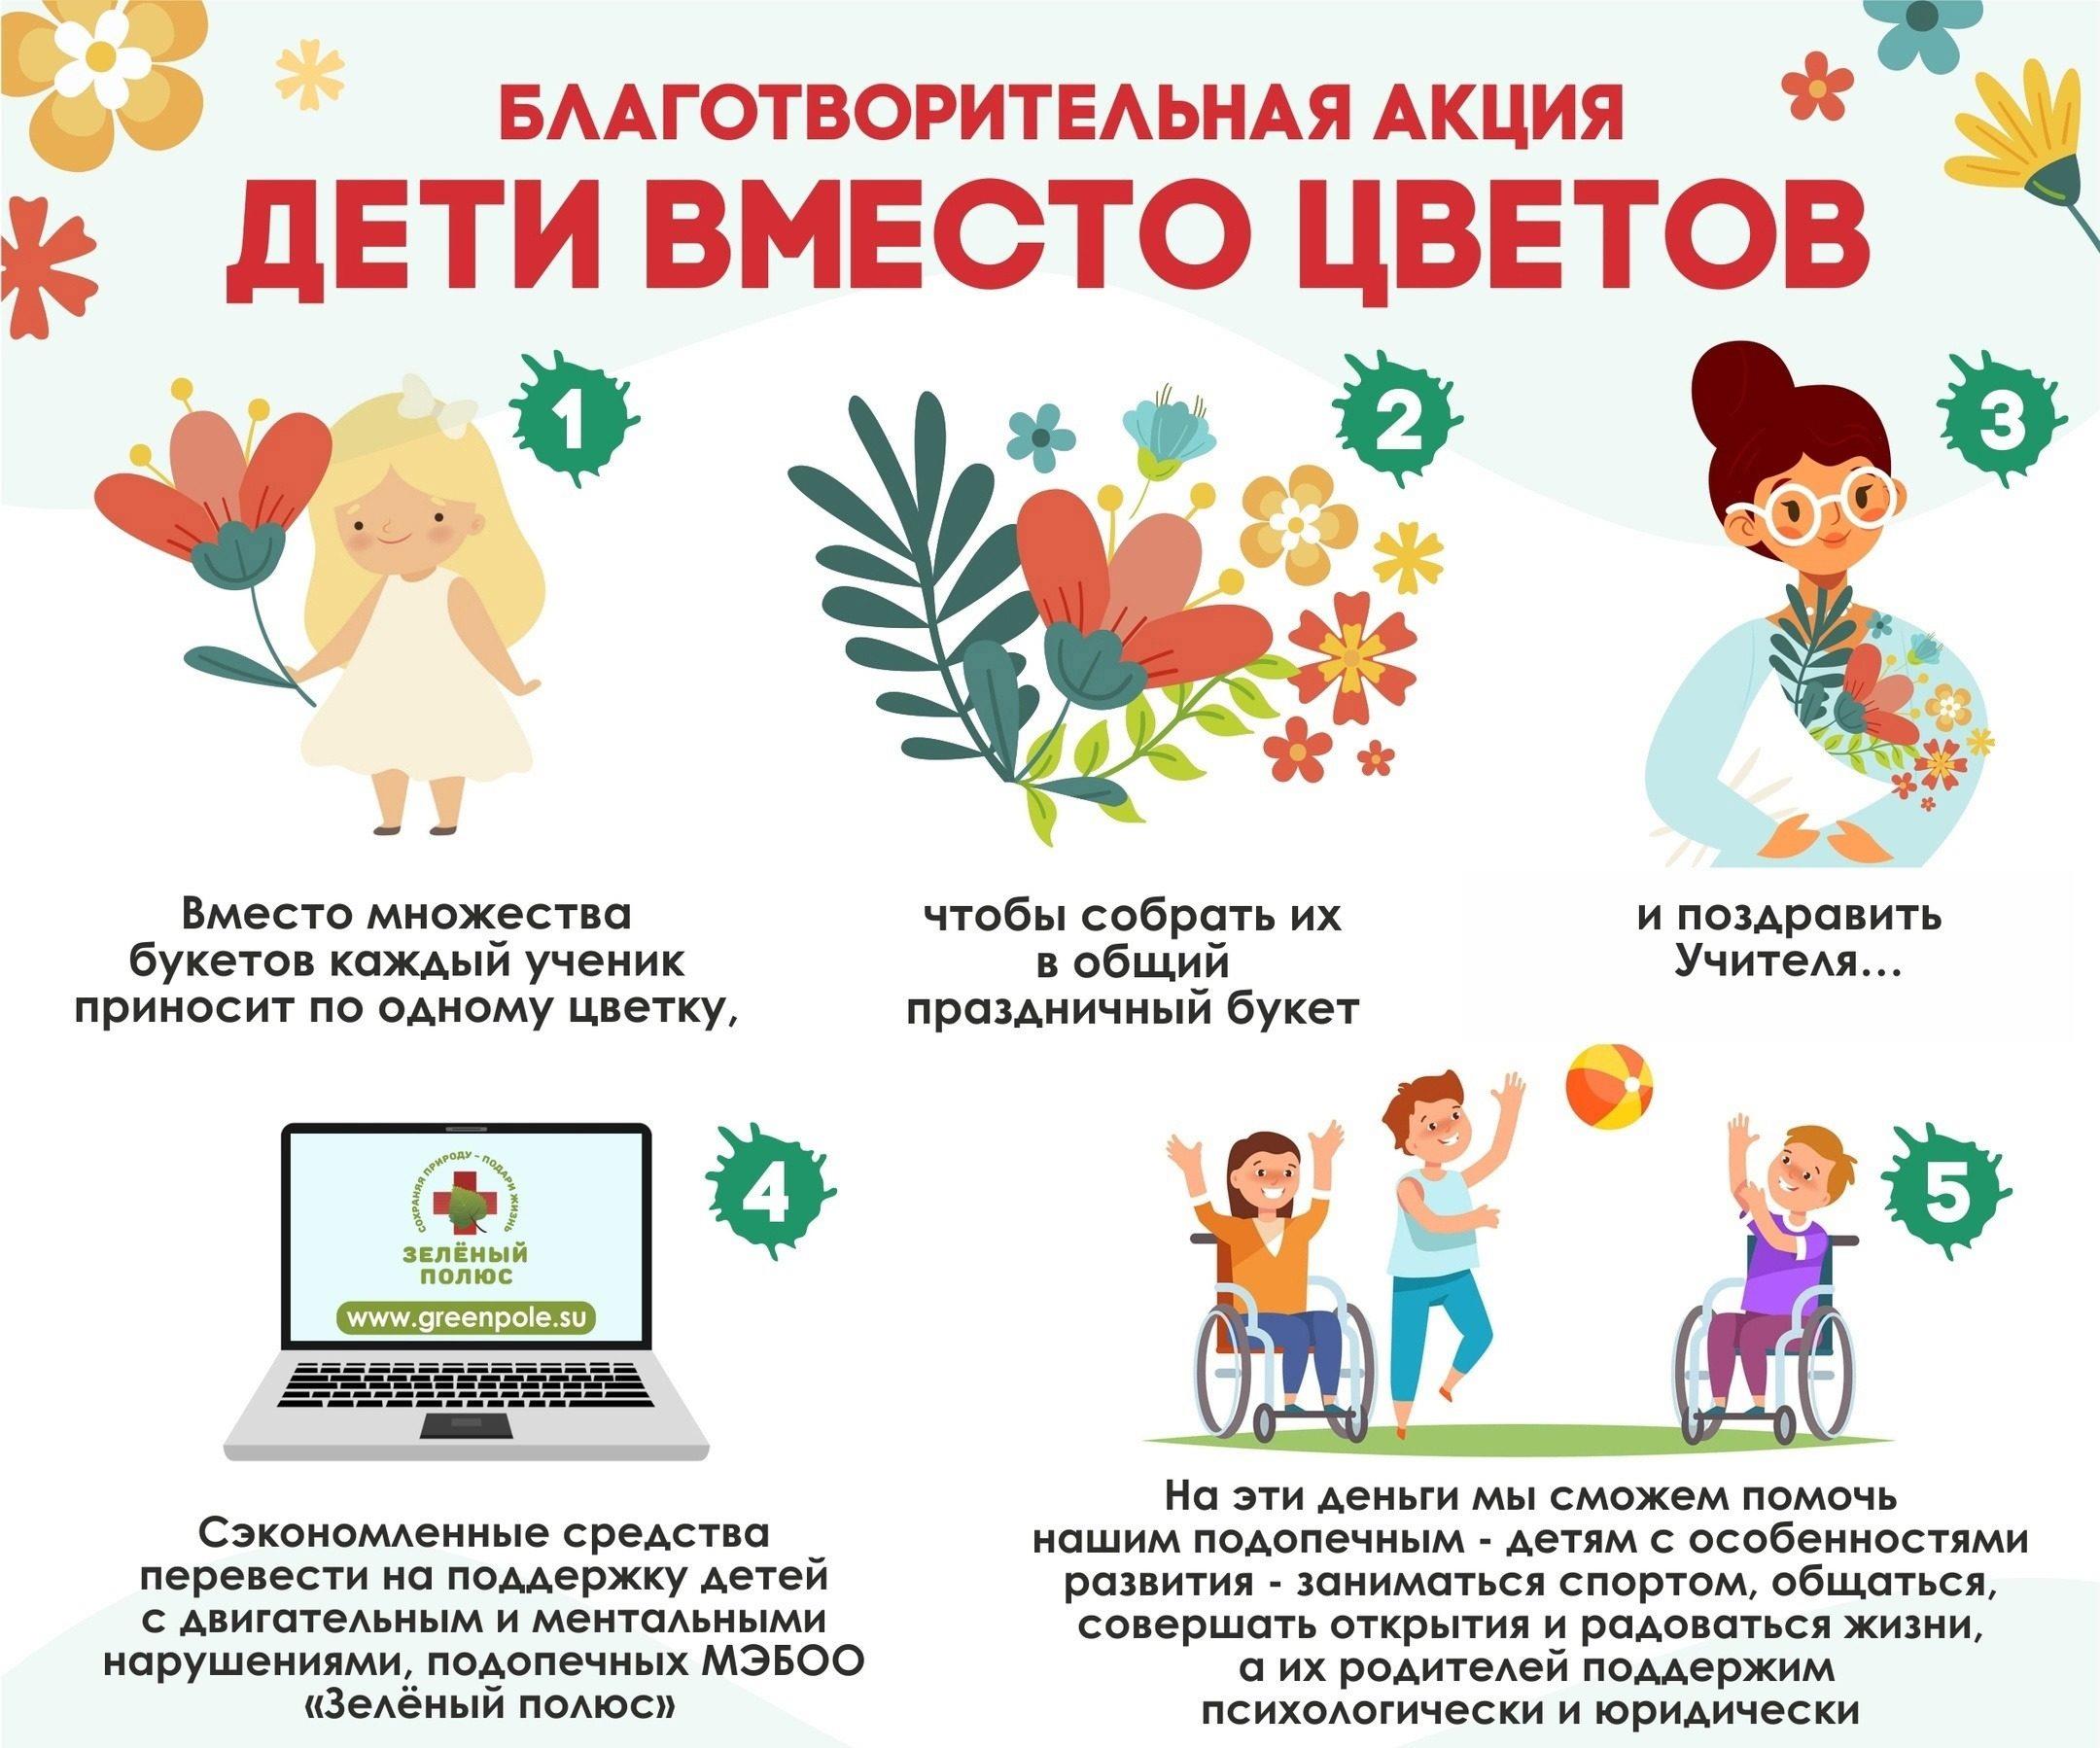 «Дети вместо цветов» — всероссийская благотворительная акция.